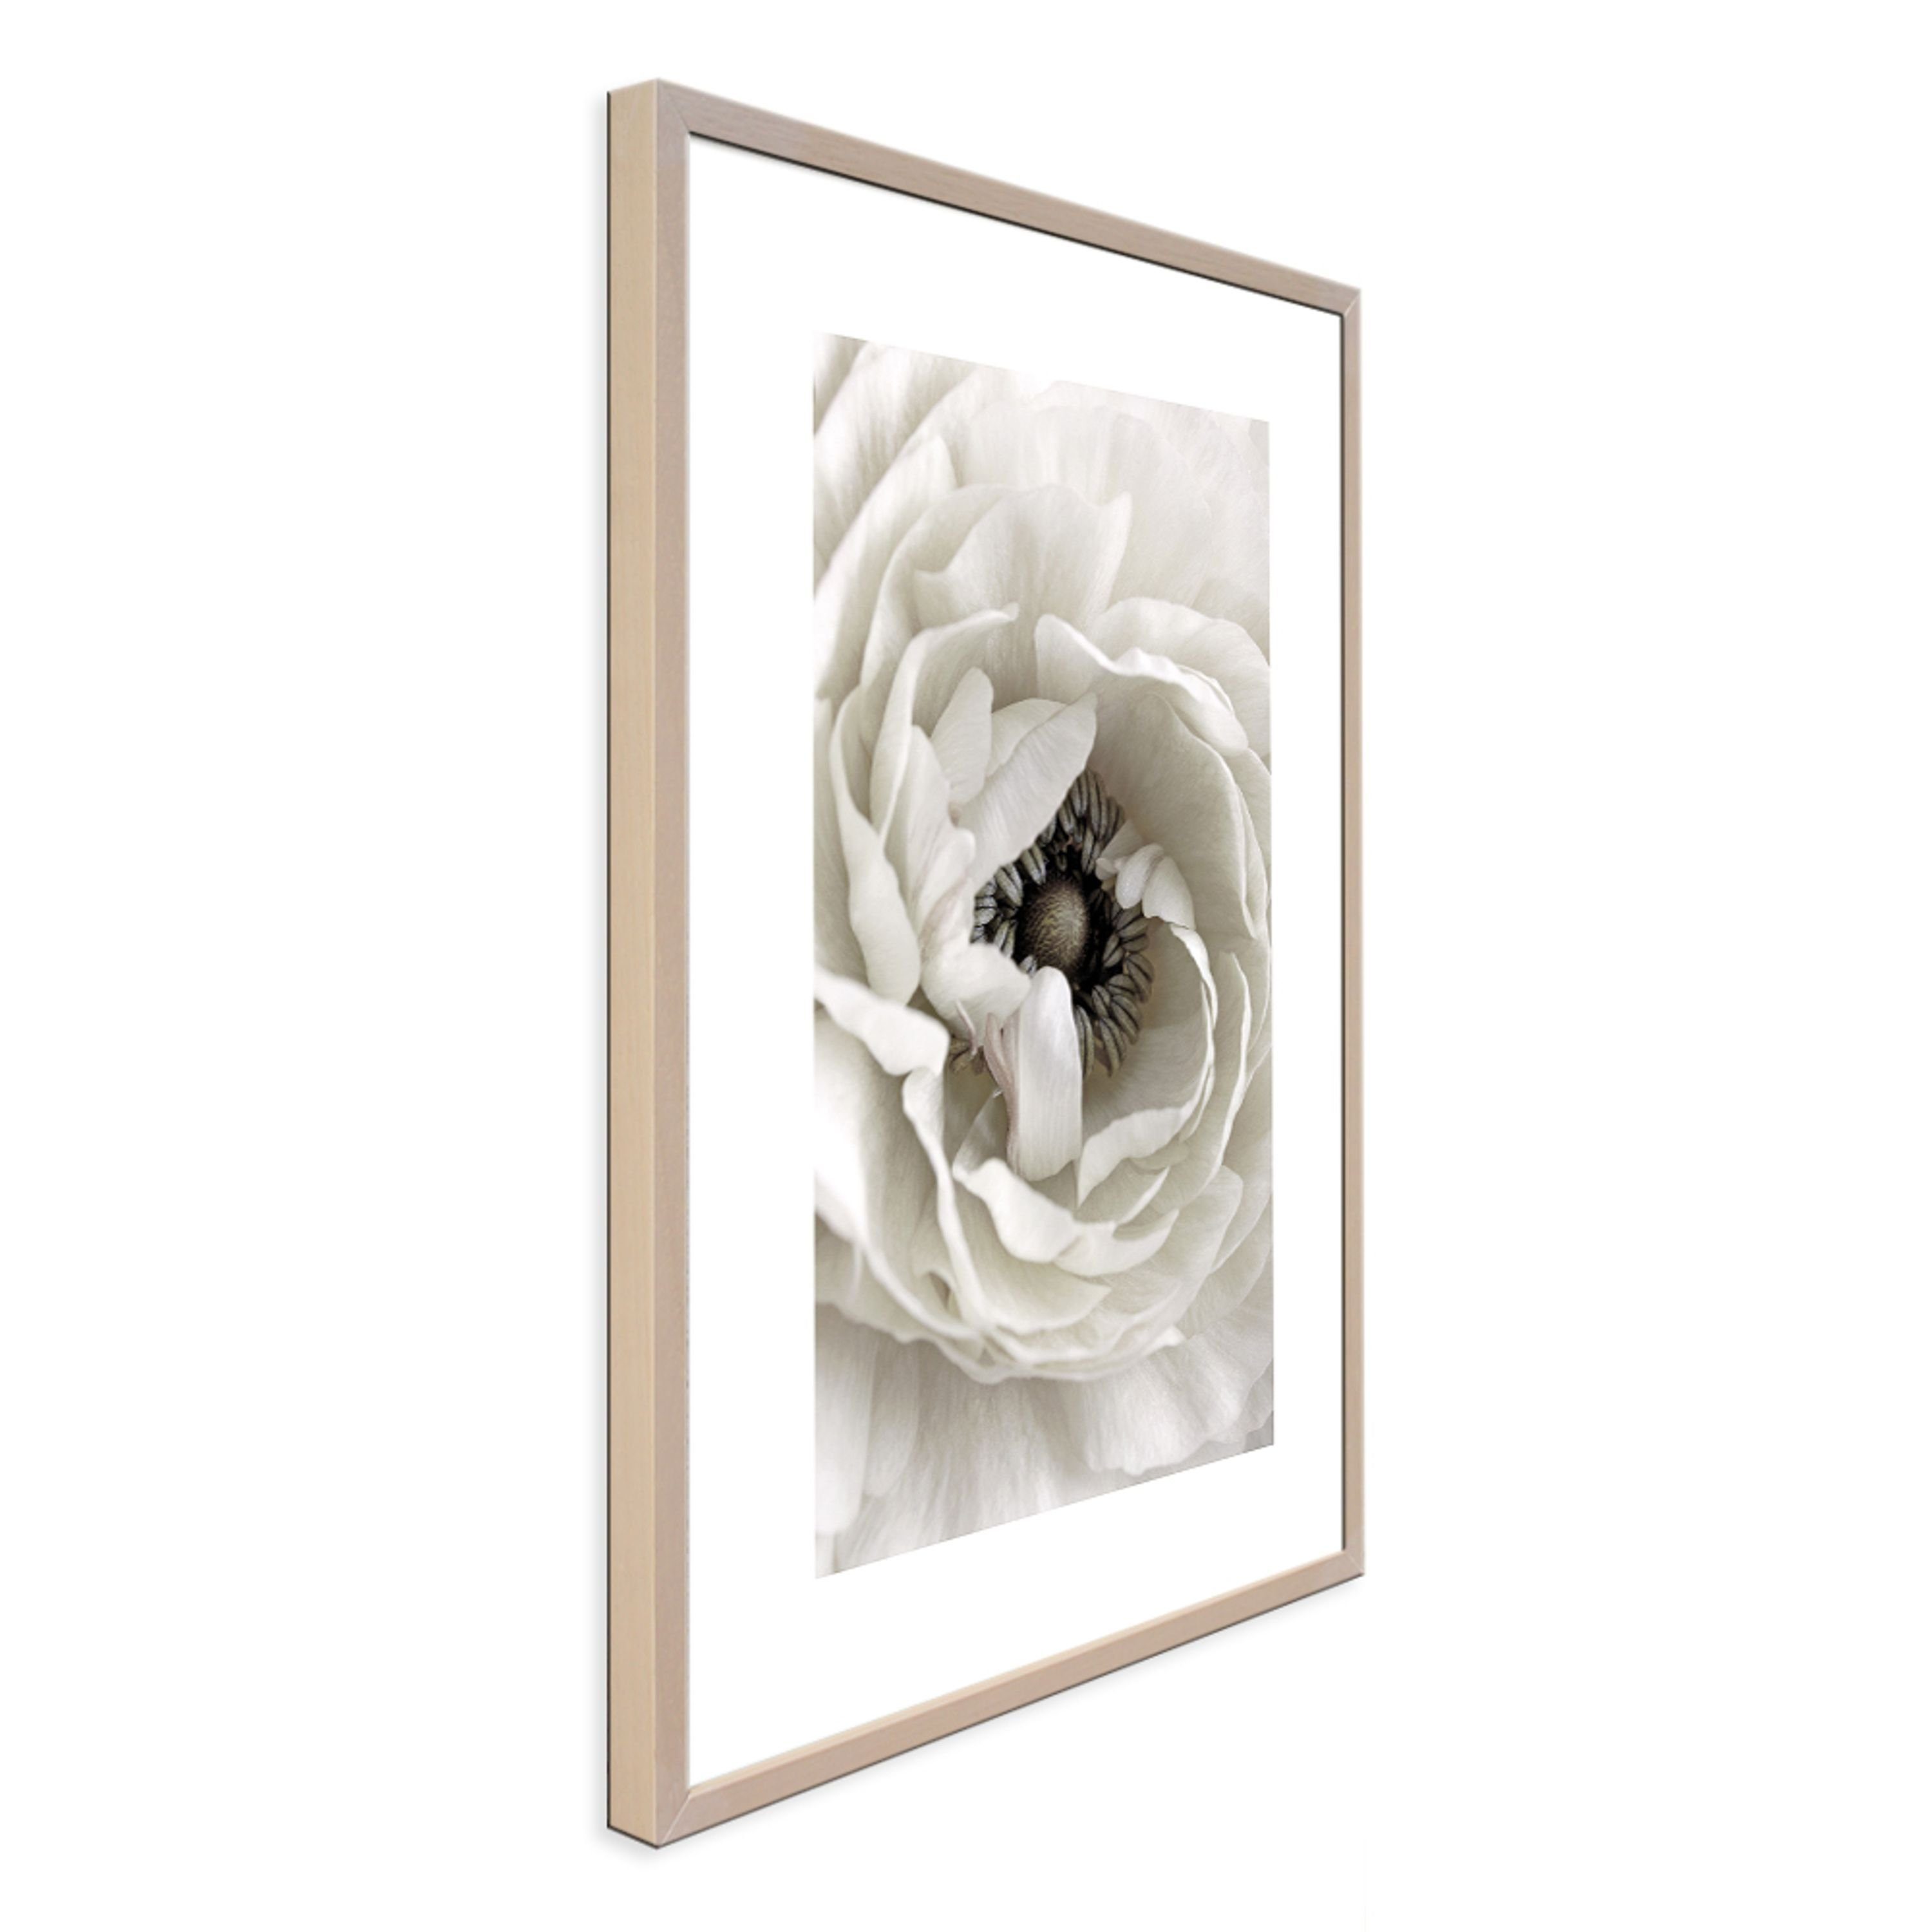 artissimo Bild weiße mit Design-Poster Holz-Rahmen gerahmt weiße Rahmen mit Close-Up / Blume, 51x71cm / Bild Blüte